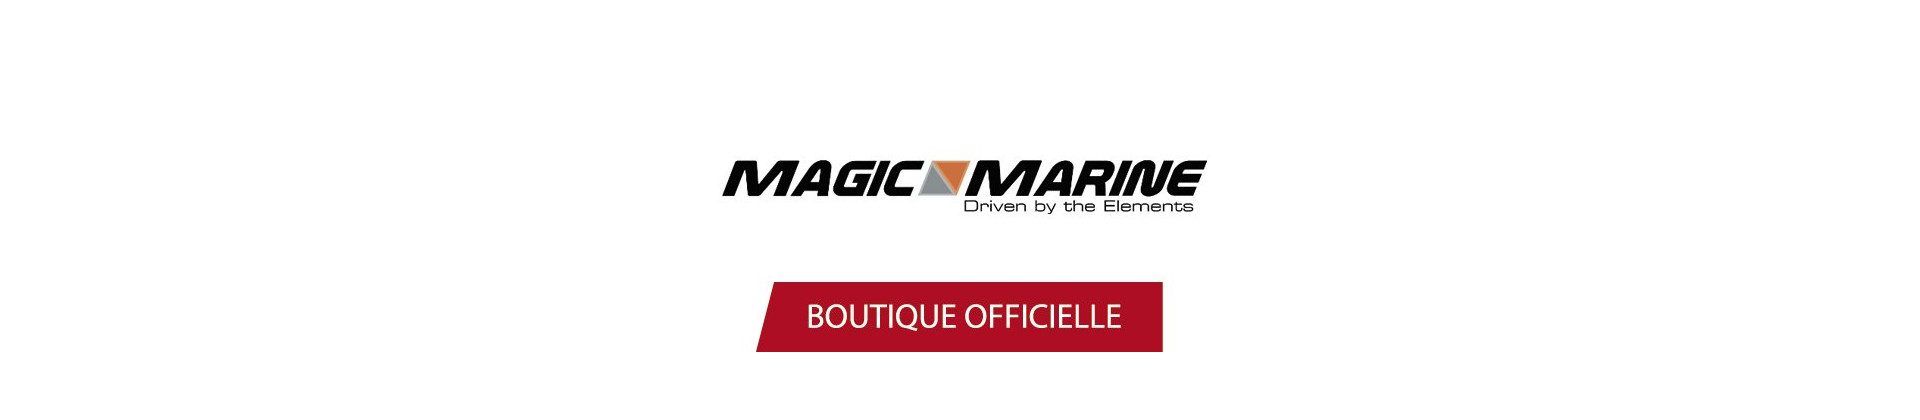 Magic Marine Clothing